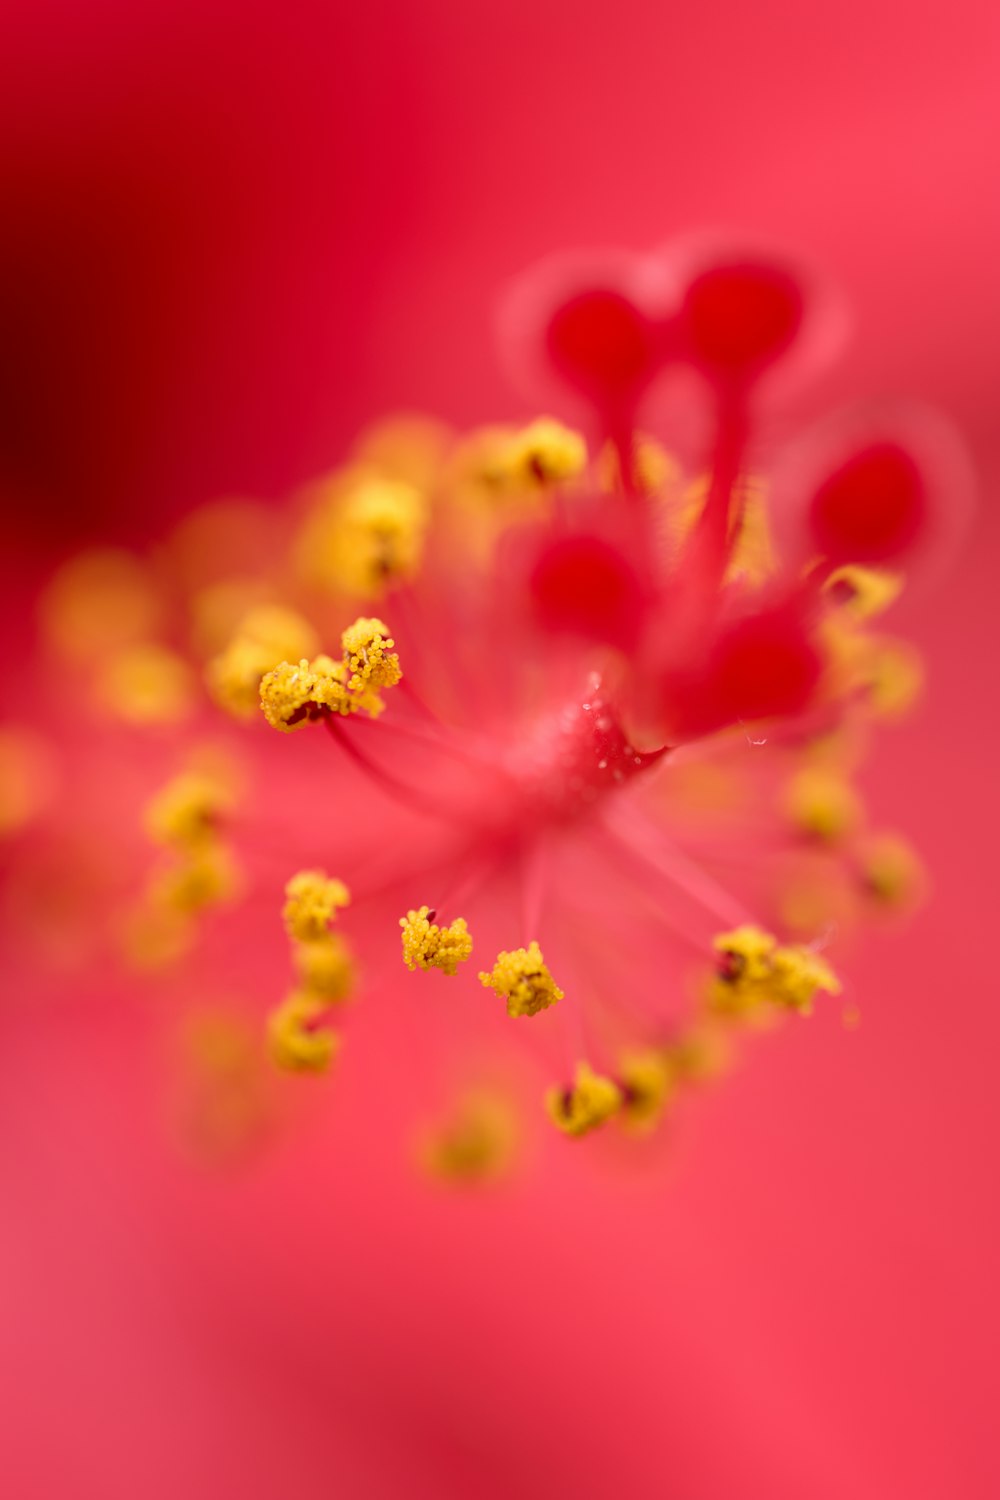 das Innere einer rosafarbenen Blüte mit gelben Staubblättern